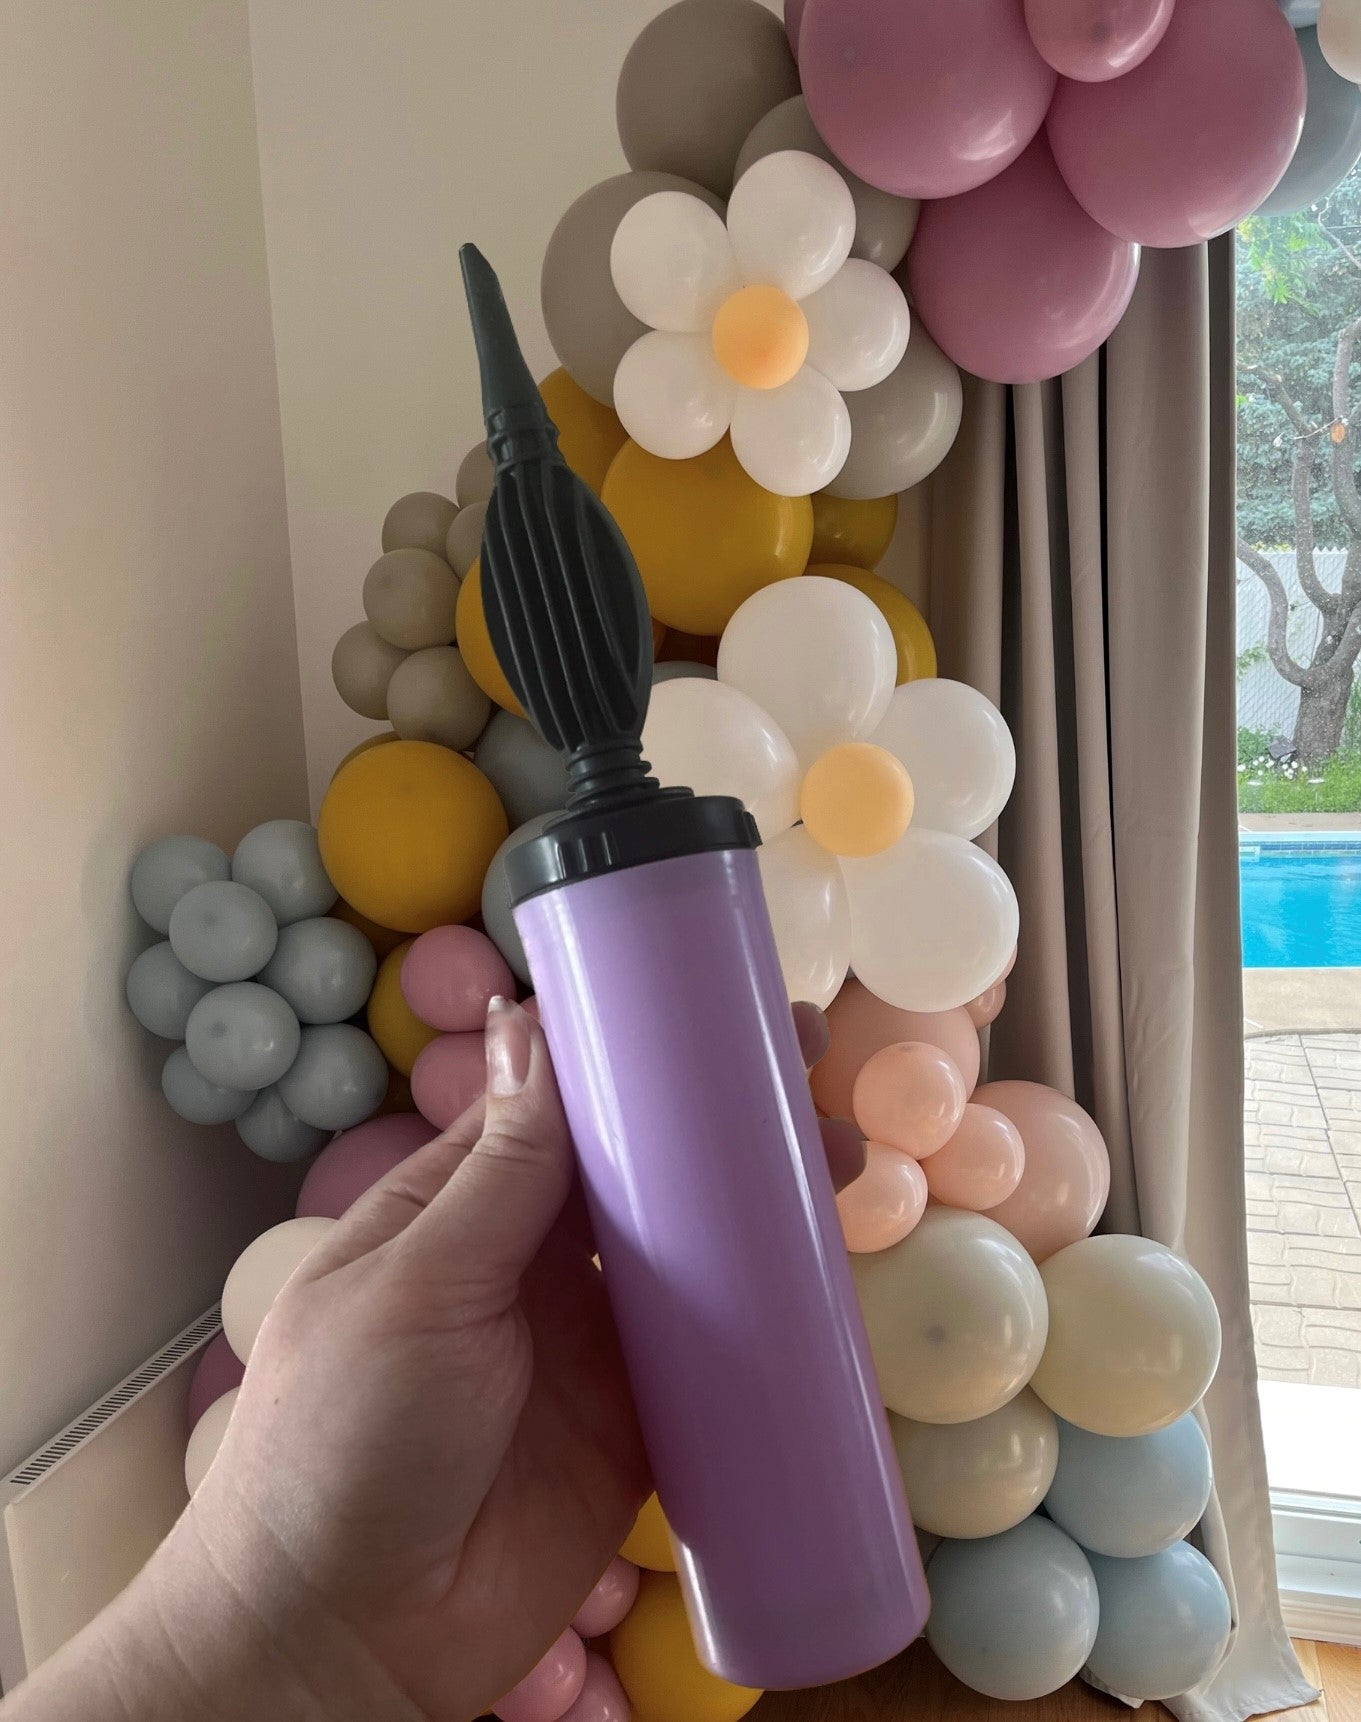 Pompe à main pour gonflage de Ballons - Jour de Fête - Gonfleurs